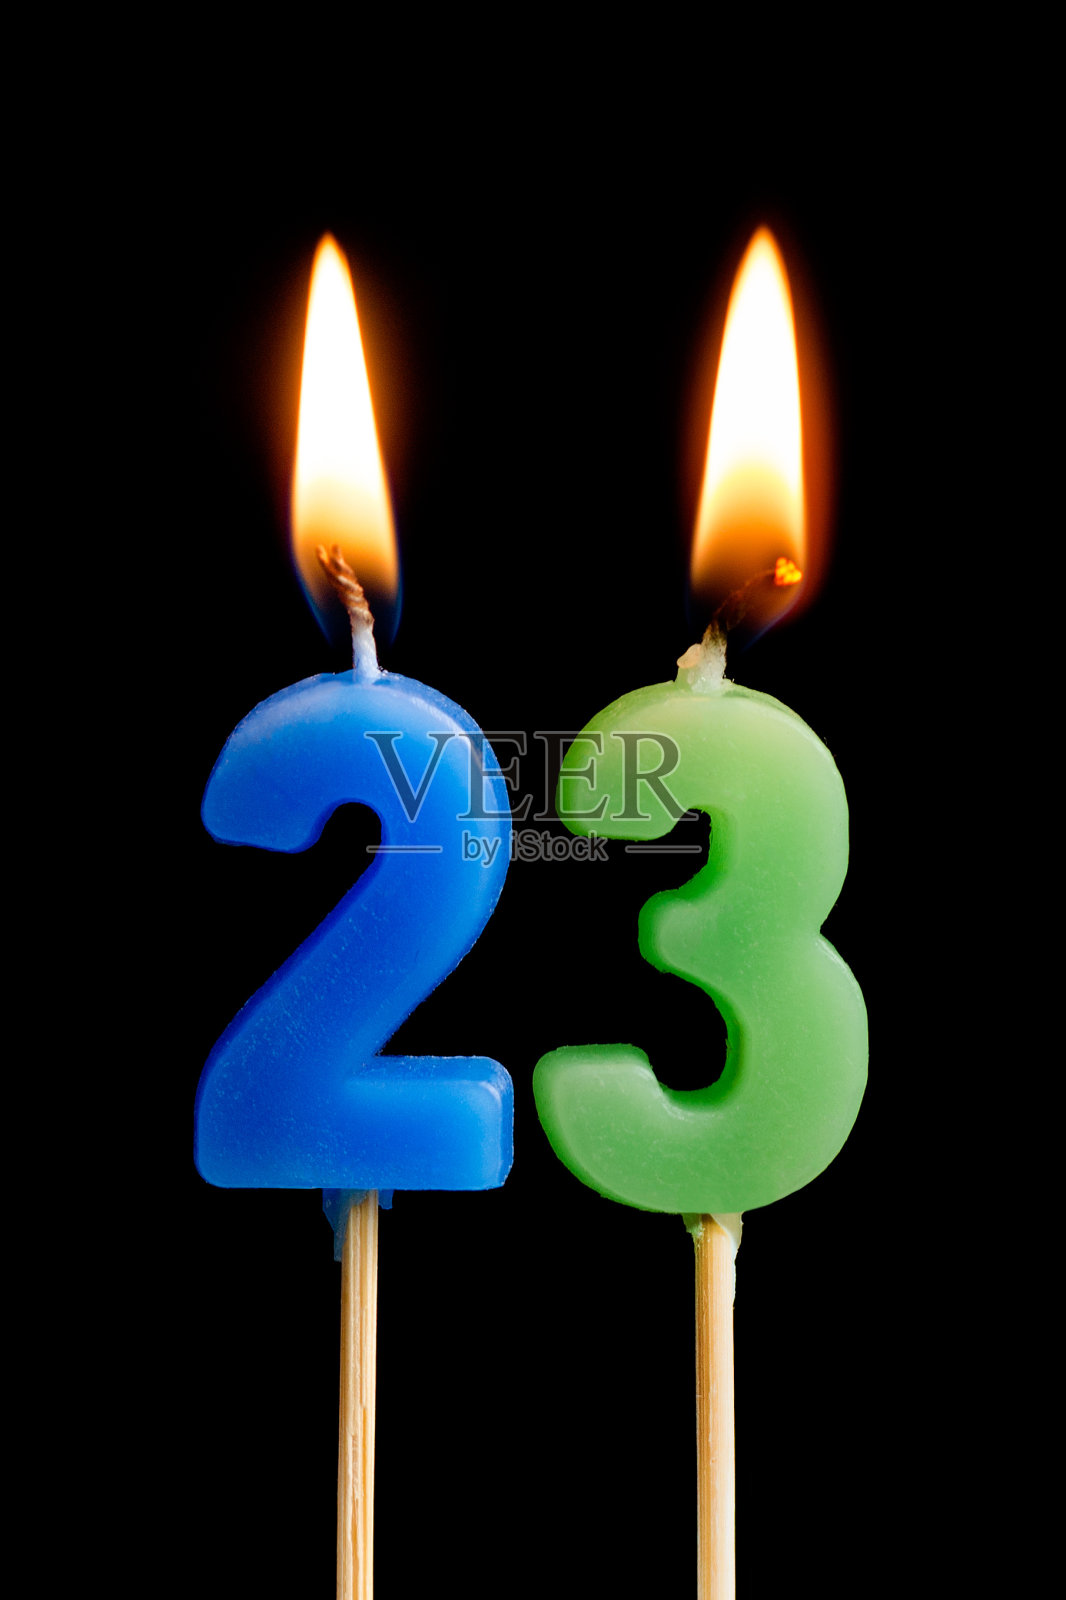 燃烧蜡烛23 23(数字，日期)的形式为蛋糕孤立在黑色的背景。庆祝生日、周年纪念、重要日期、节日、餐桌摆设的概念照片摄影图片